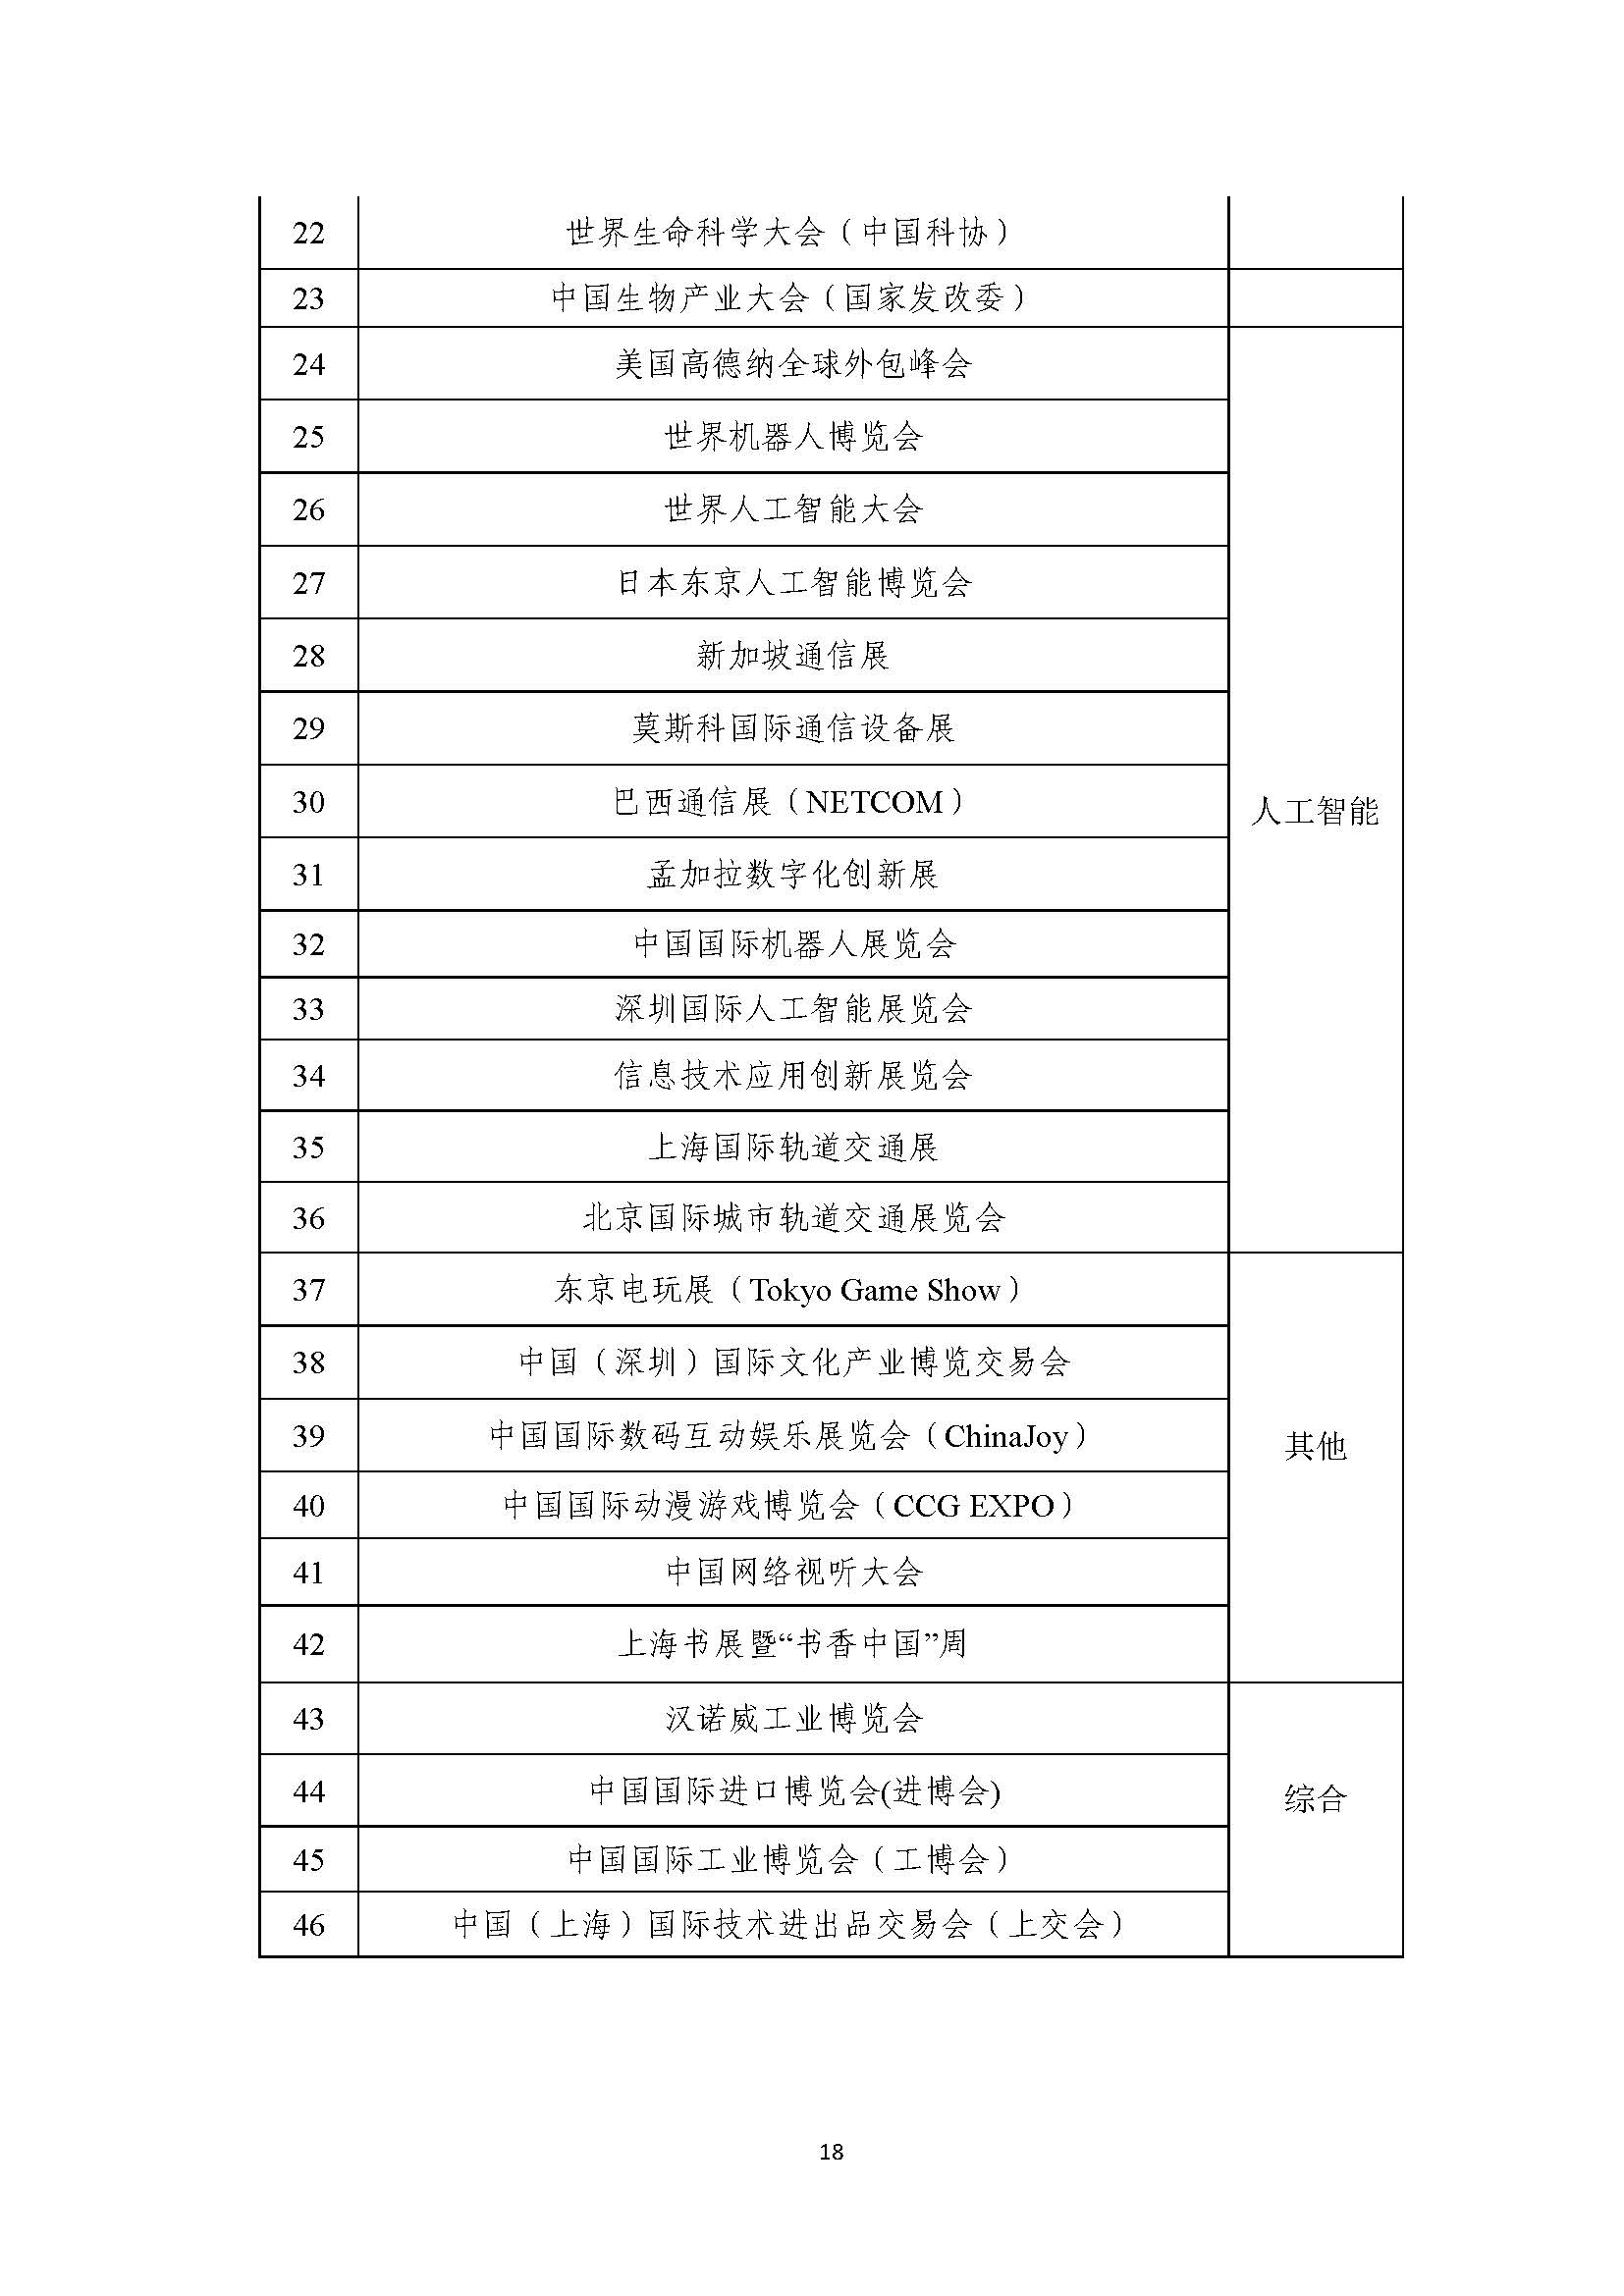 2021年张江科学城专项政策申报指南_页面_18.jpg